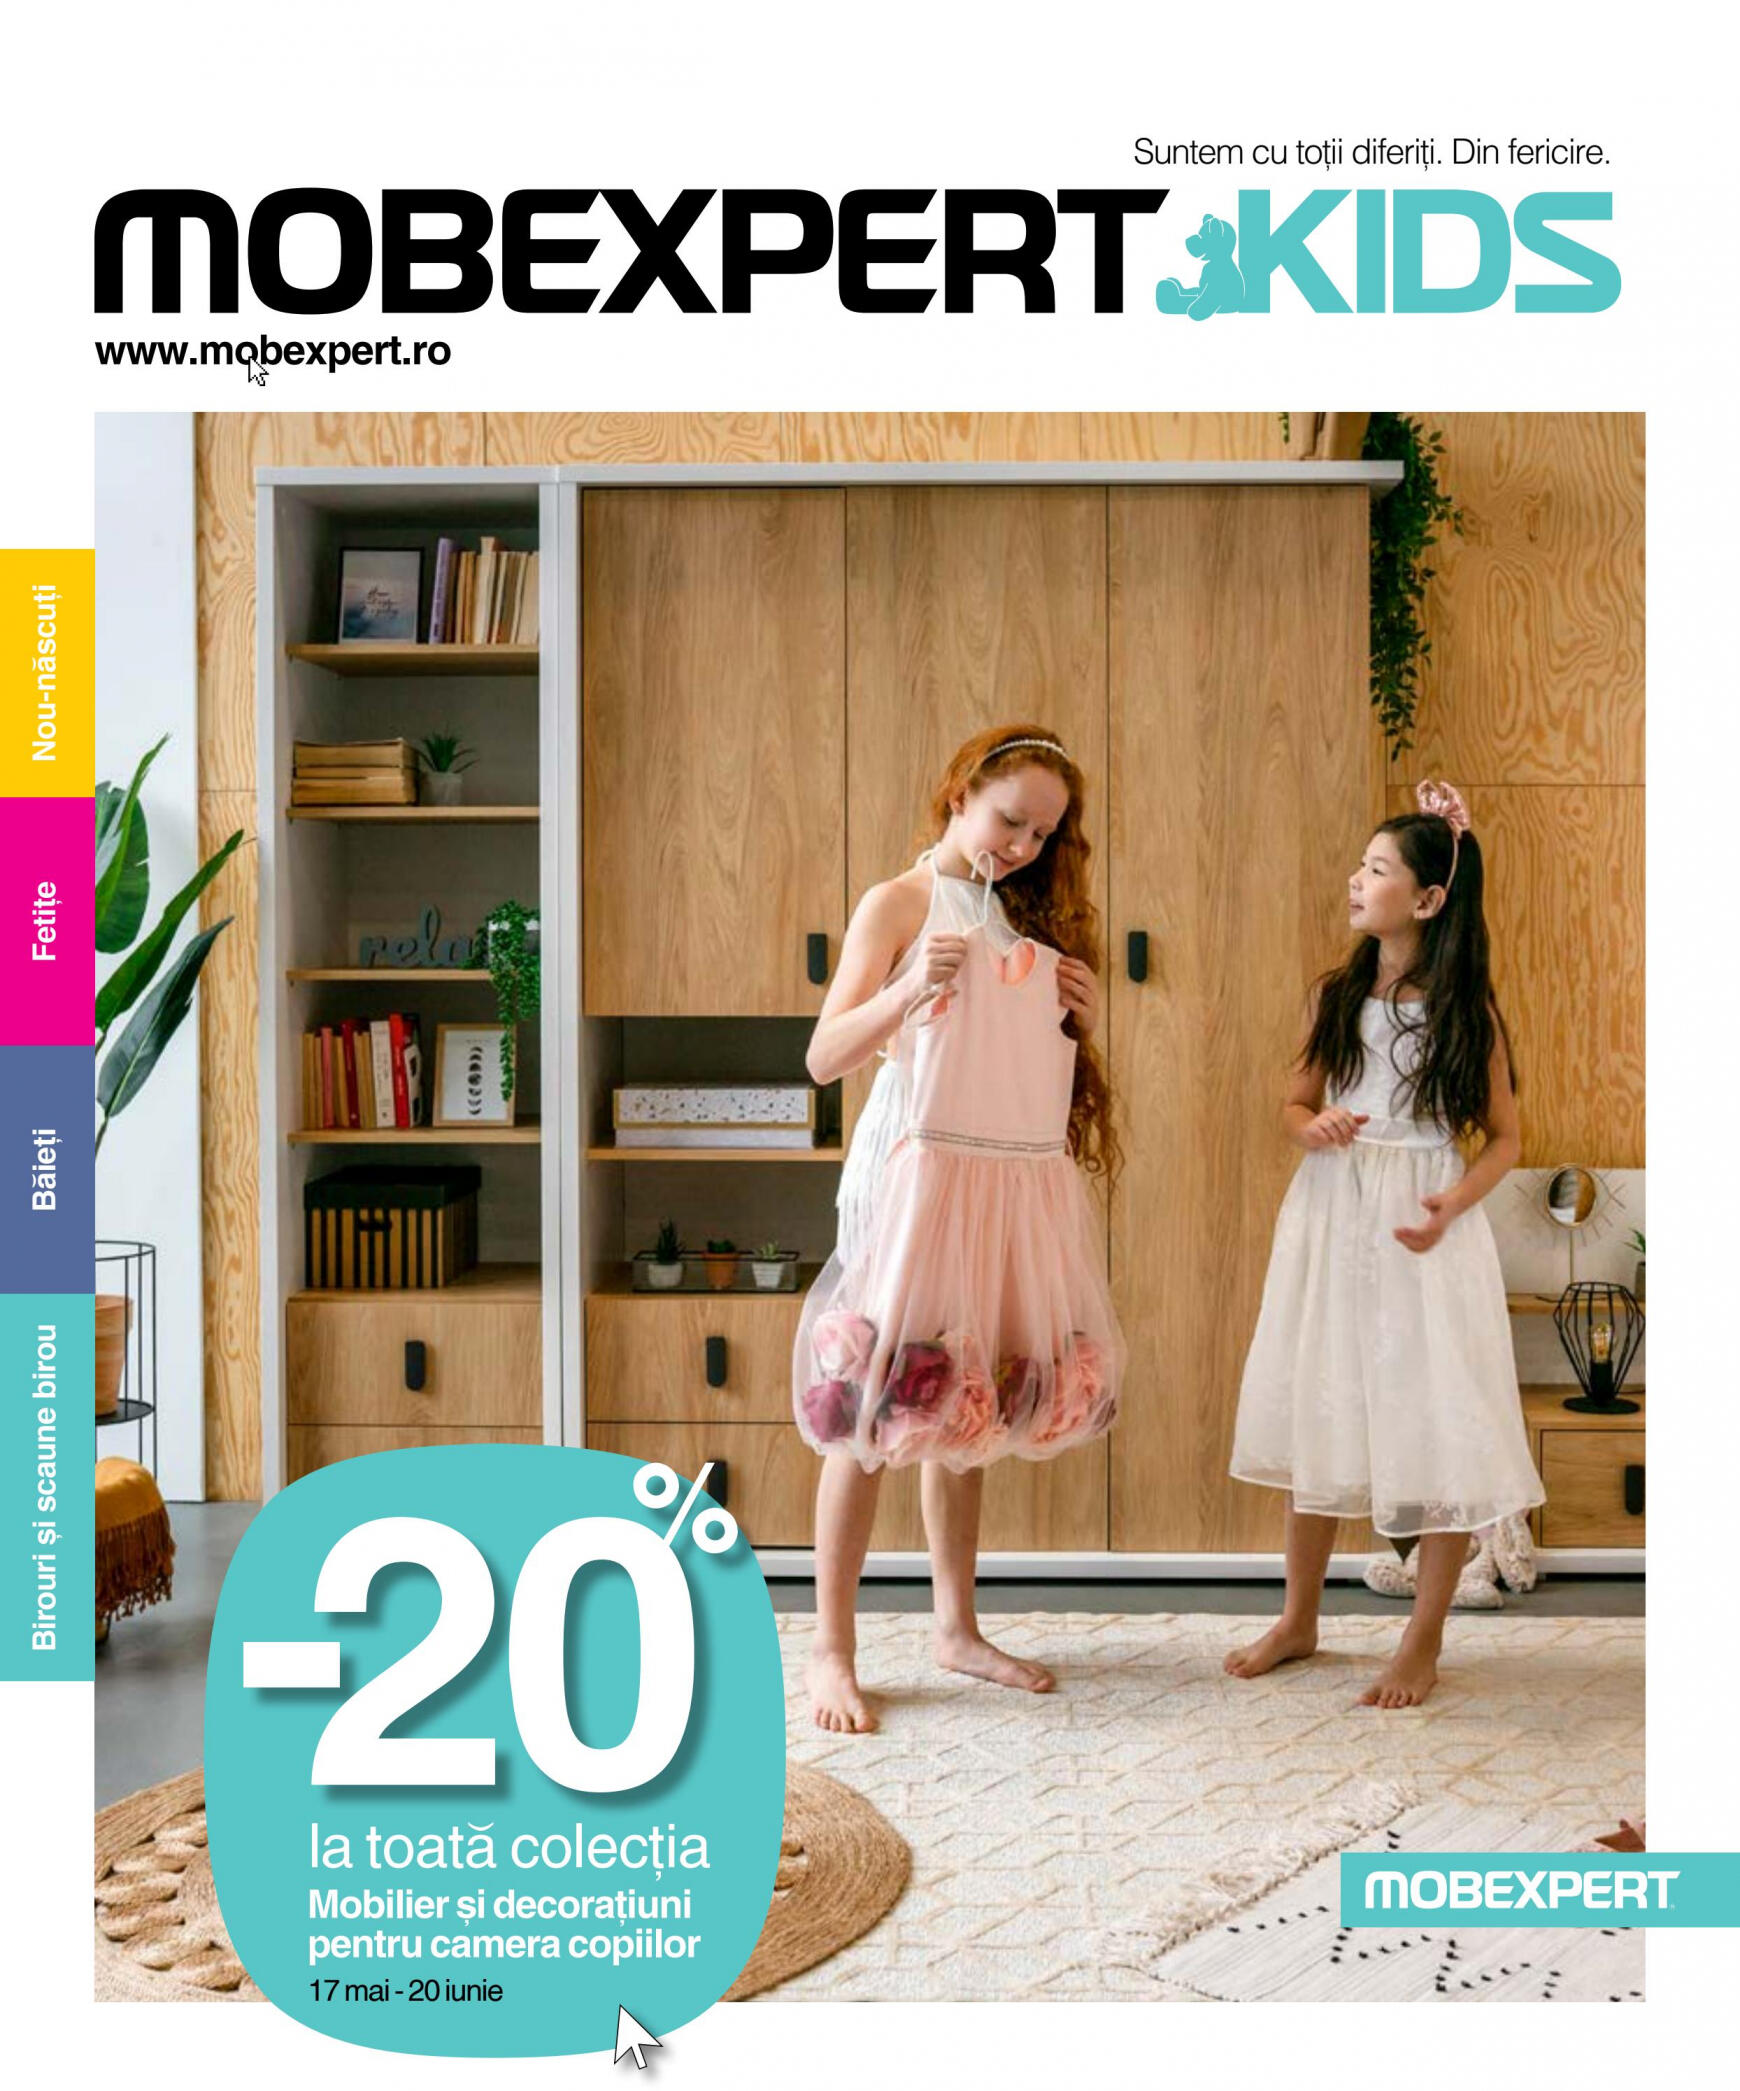 mobexpert - Mobexpert - Noua colecție de mobilier și decorațiuni pentru Camera copiilor